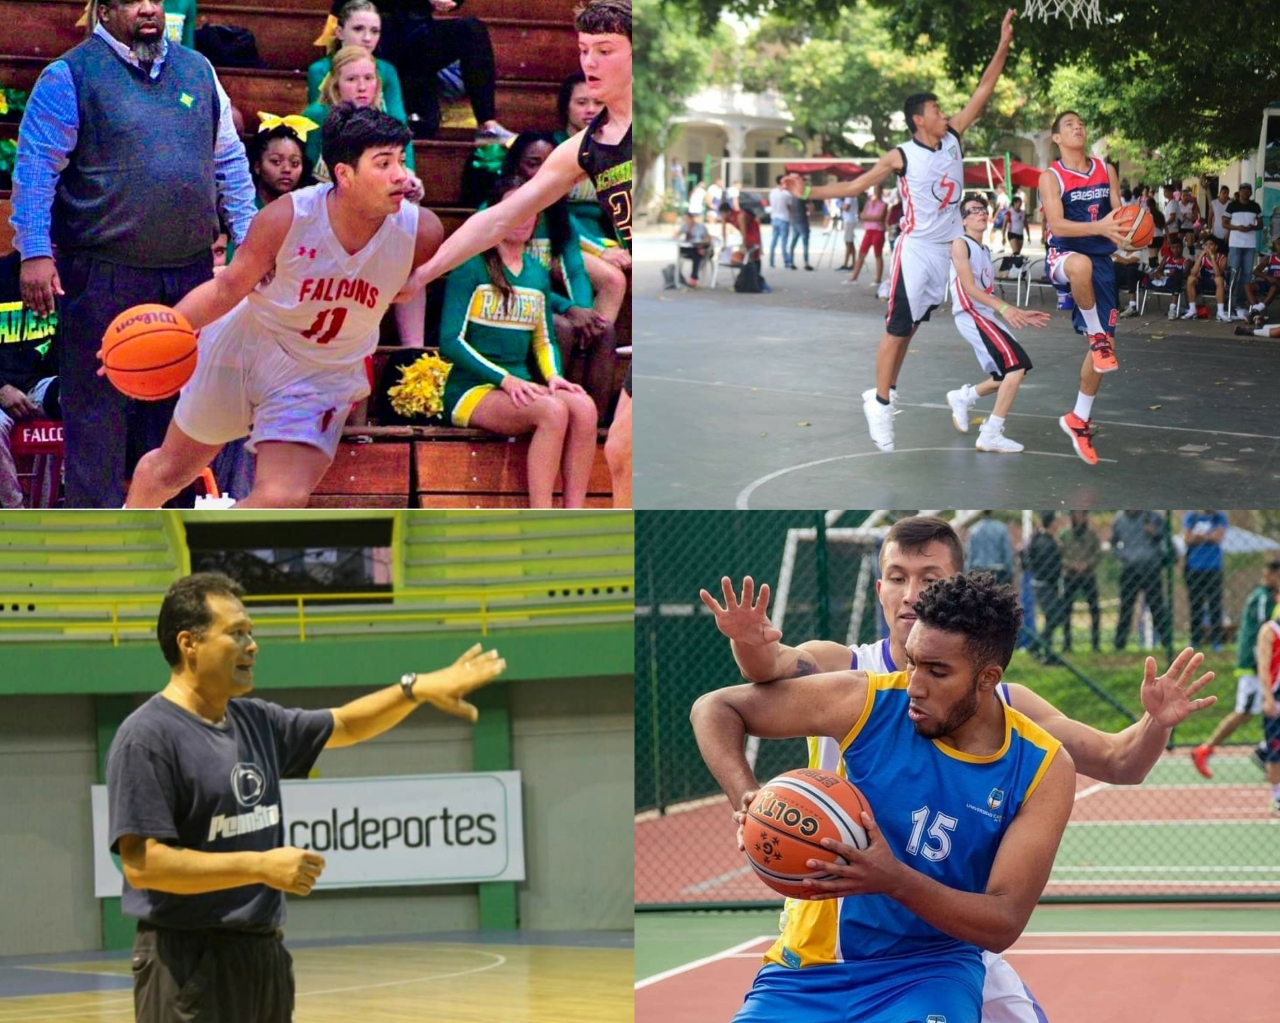 Tras las huellas del baloncesto colombiano: cuatro historias de vida deportivas